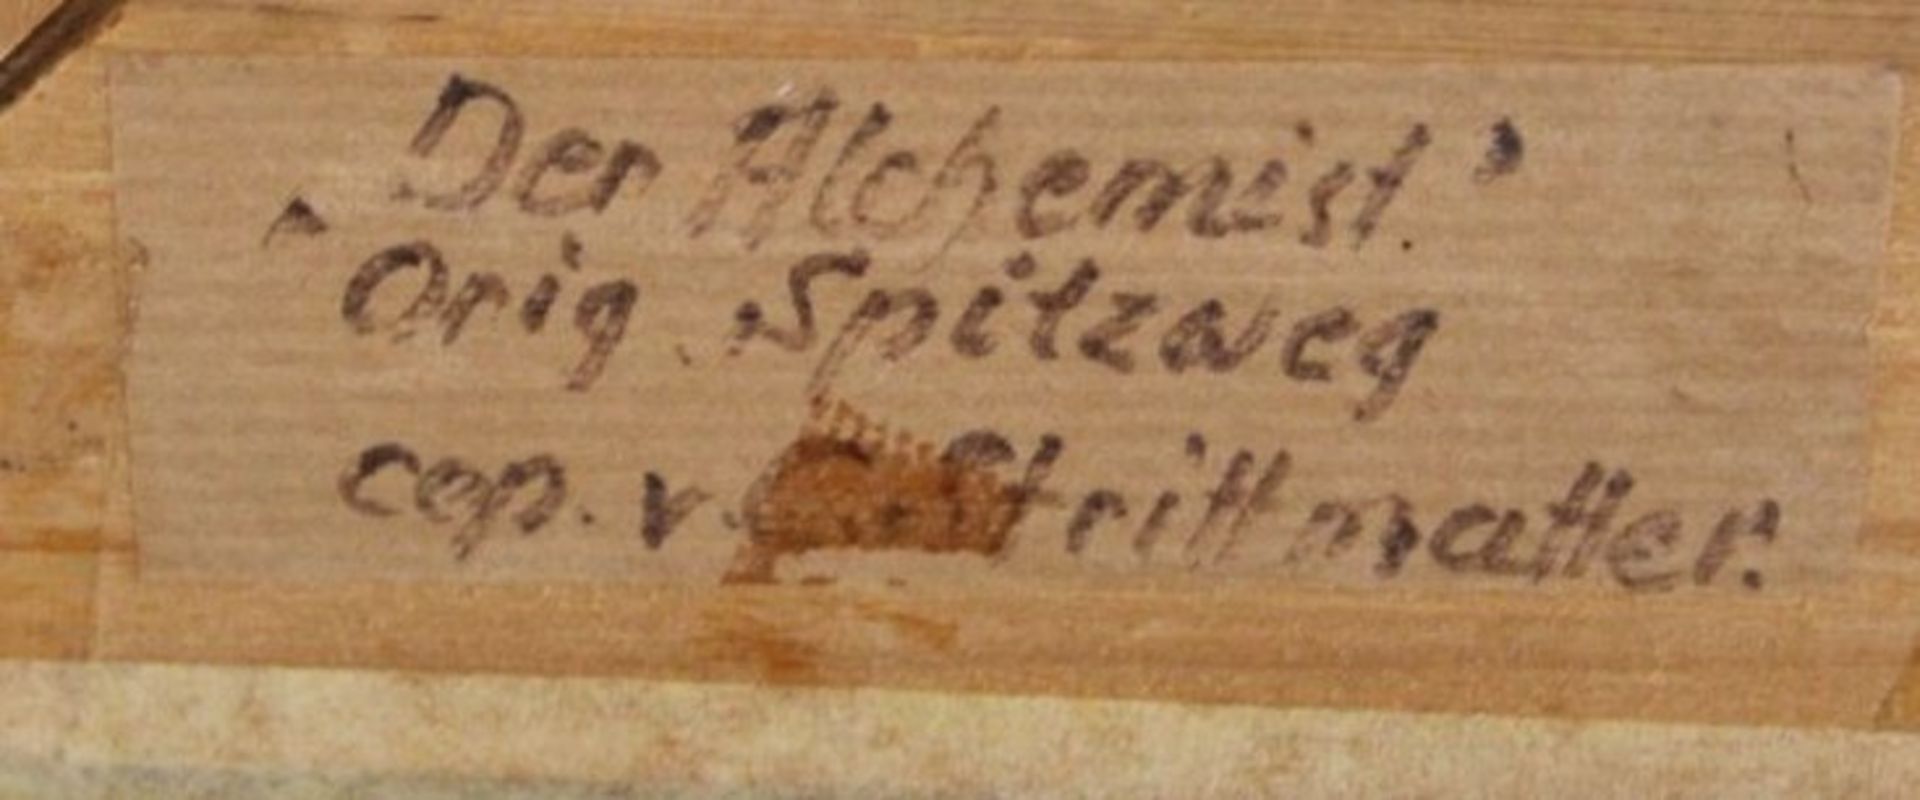 Der alchemist, Kopie nach Spitzweg, verso signiert Stritmatter, Öl/Leinwand, gerahmt, RG 49 x 59cm.- - Bild 4 aus 4